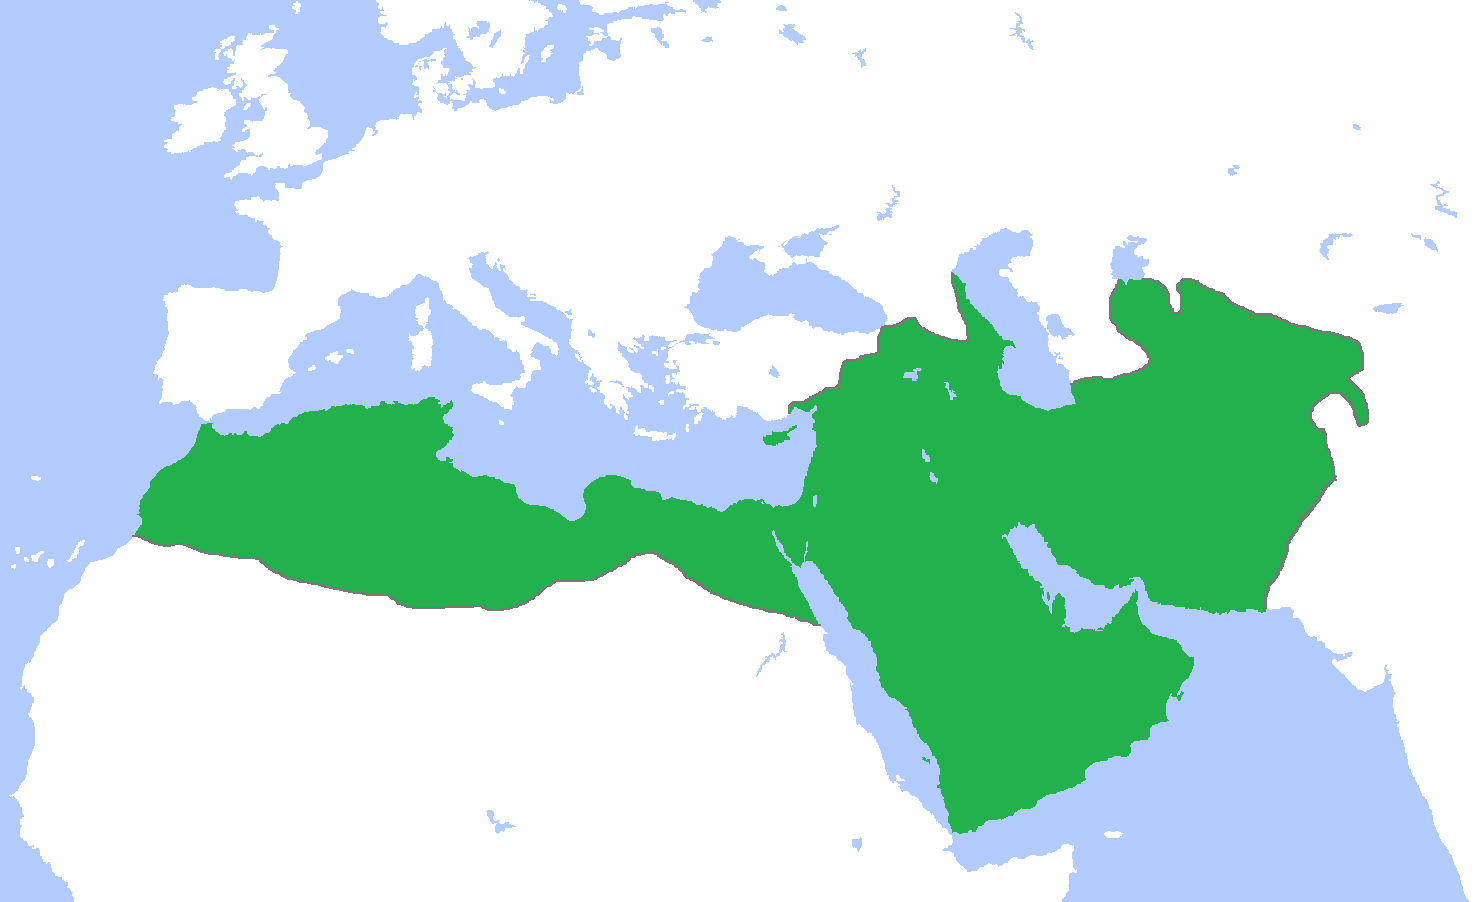 Umayyad Caliphate